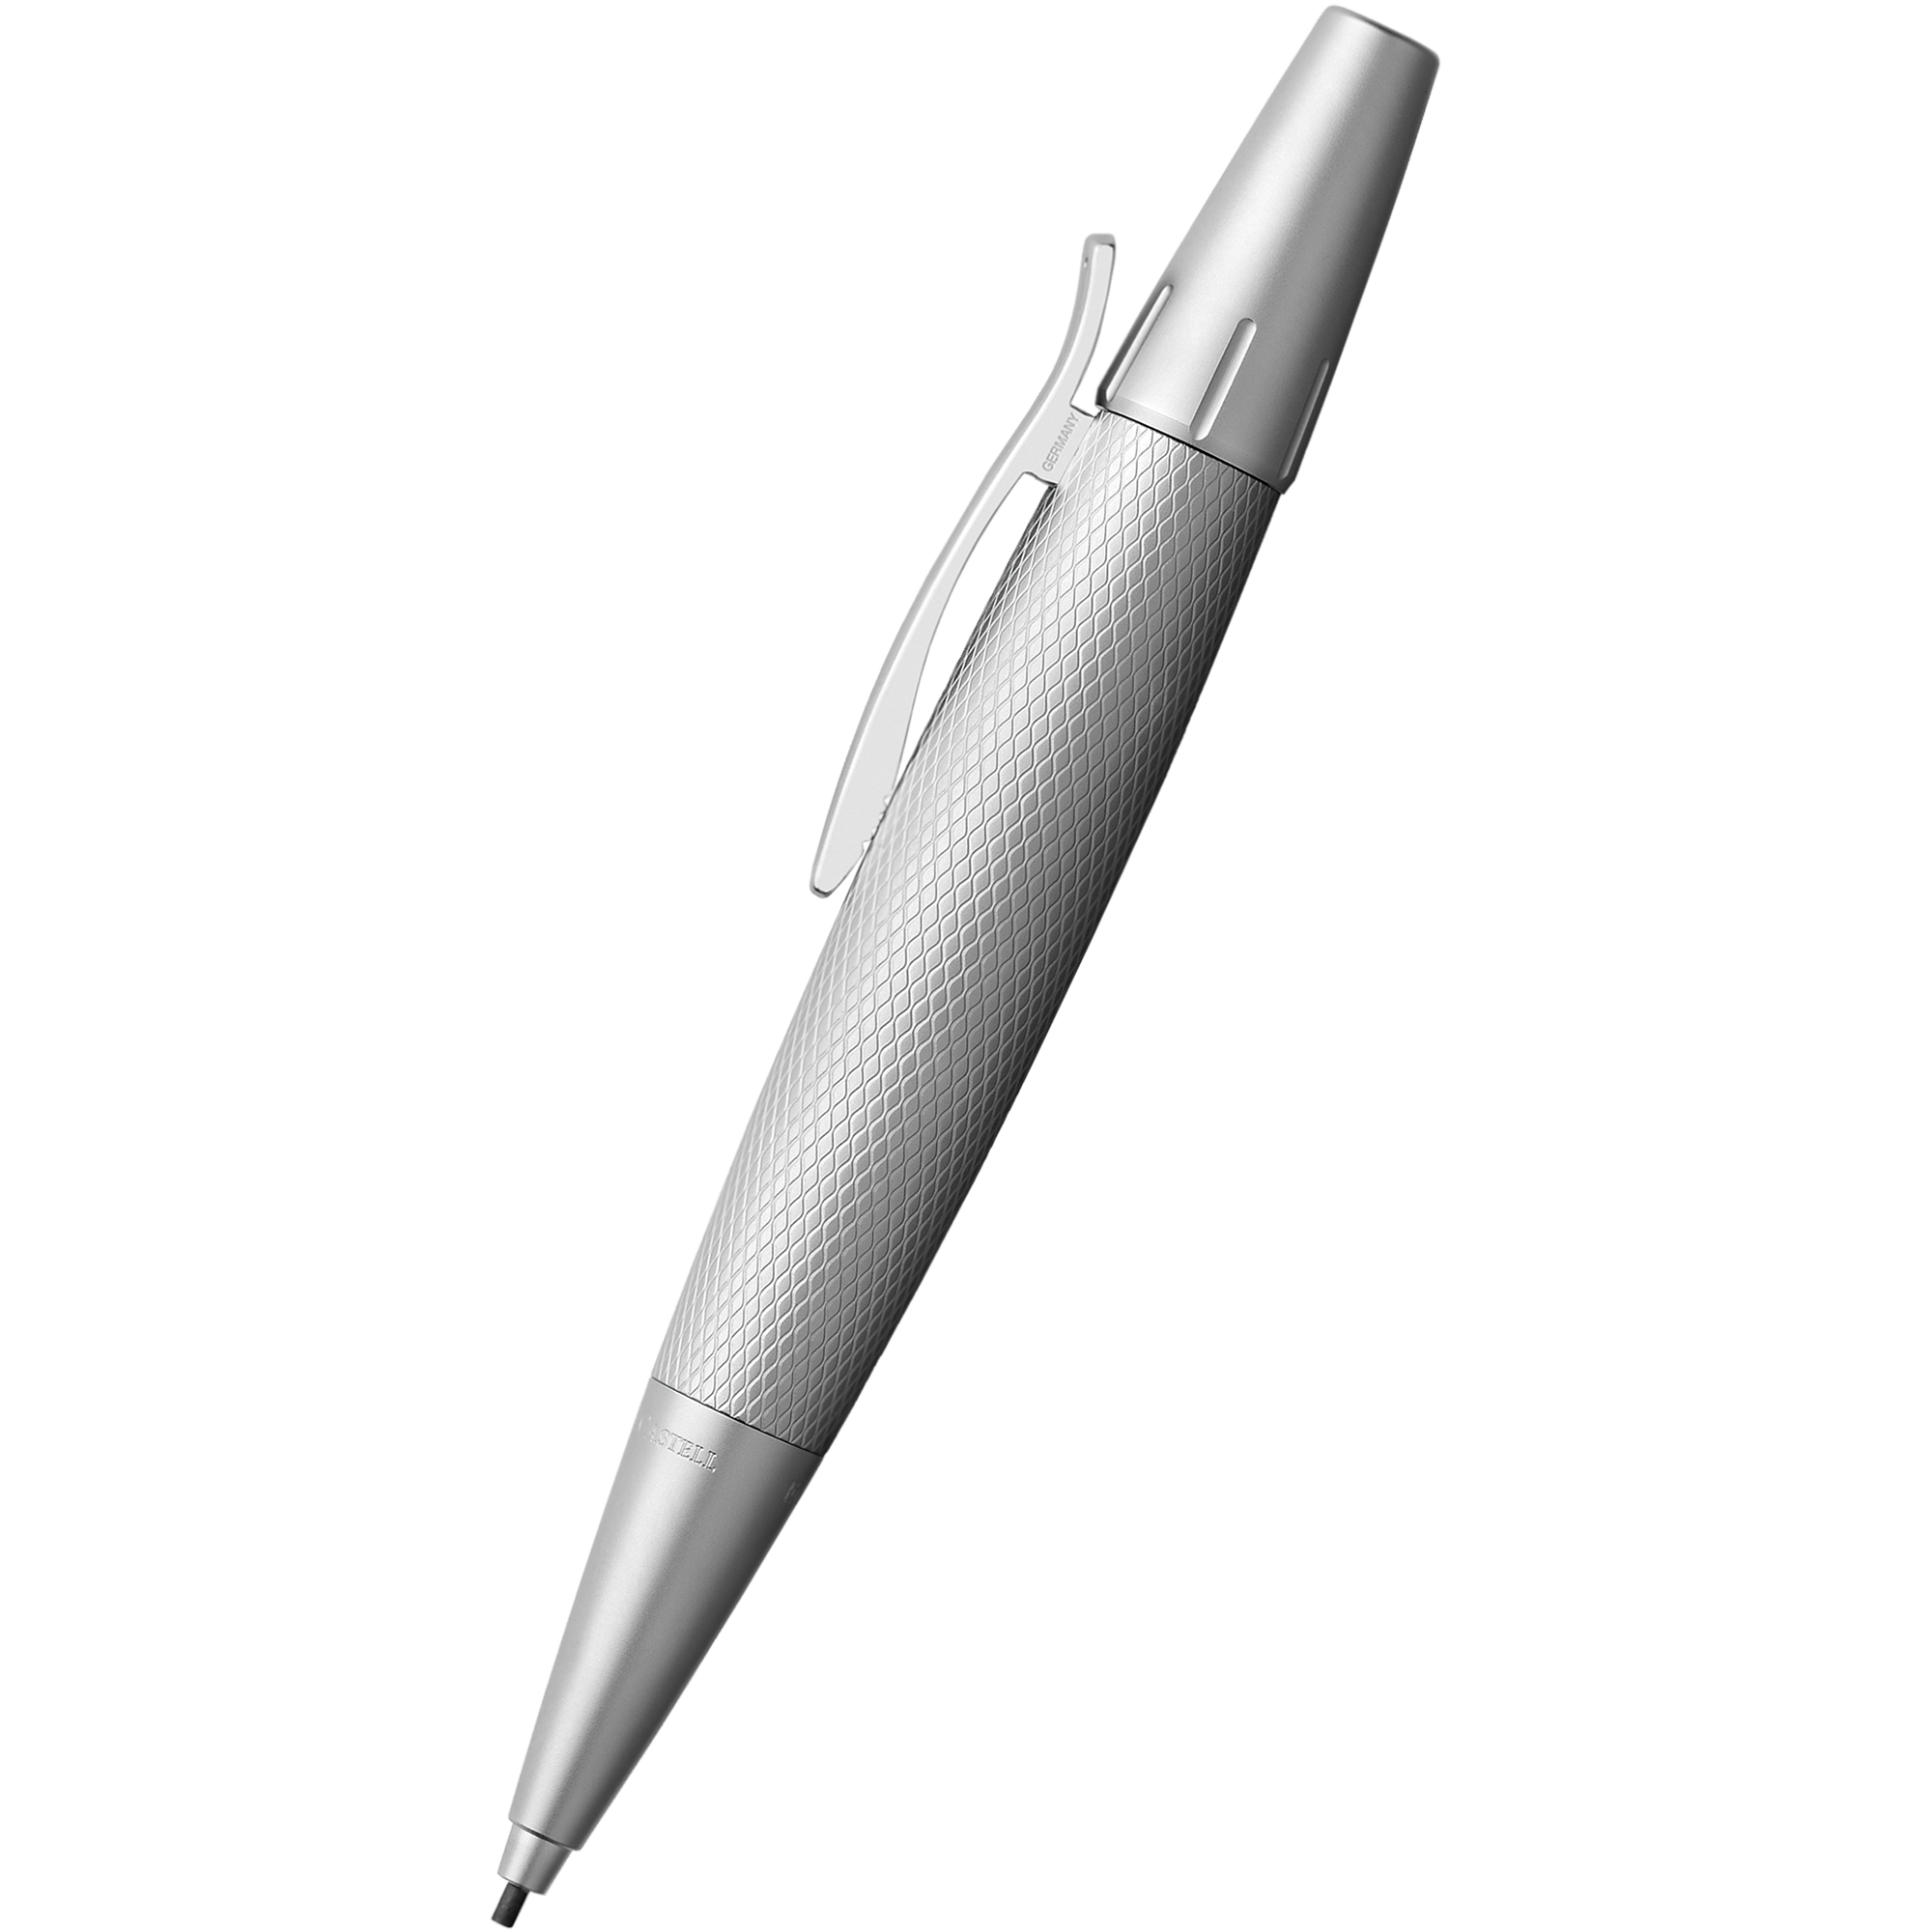 Faber-Castell Design E-Motion Mechanical Pencil - Pure Silver-Pen Boutique Ltd